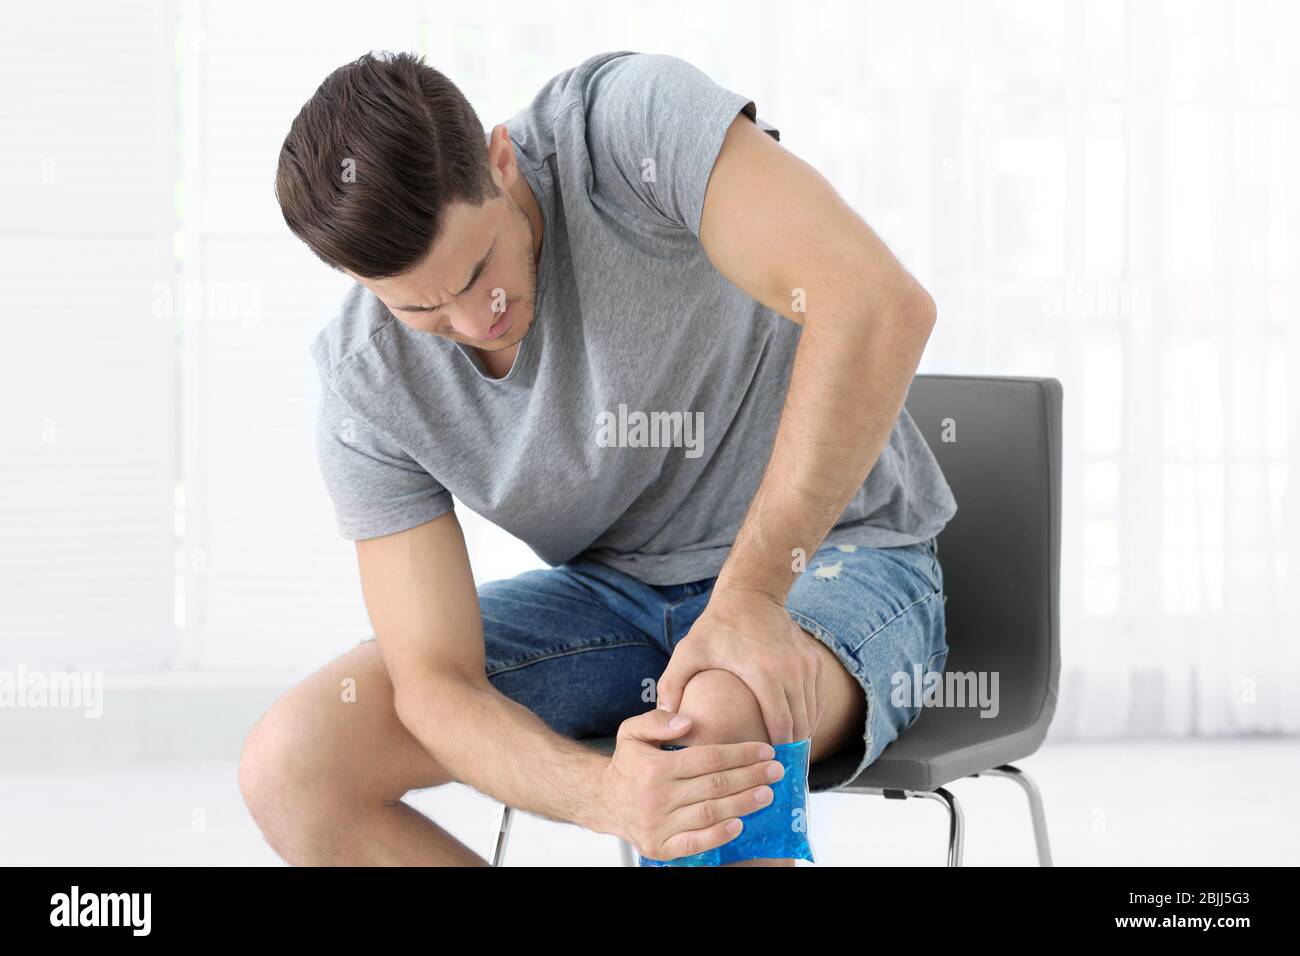 Hombre joven aplicando compresas frías en la pierna en casa Fotografía de  stock - Alamy